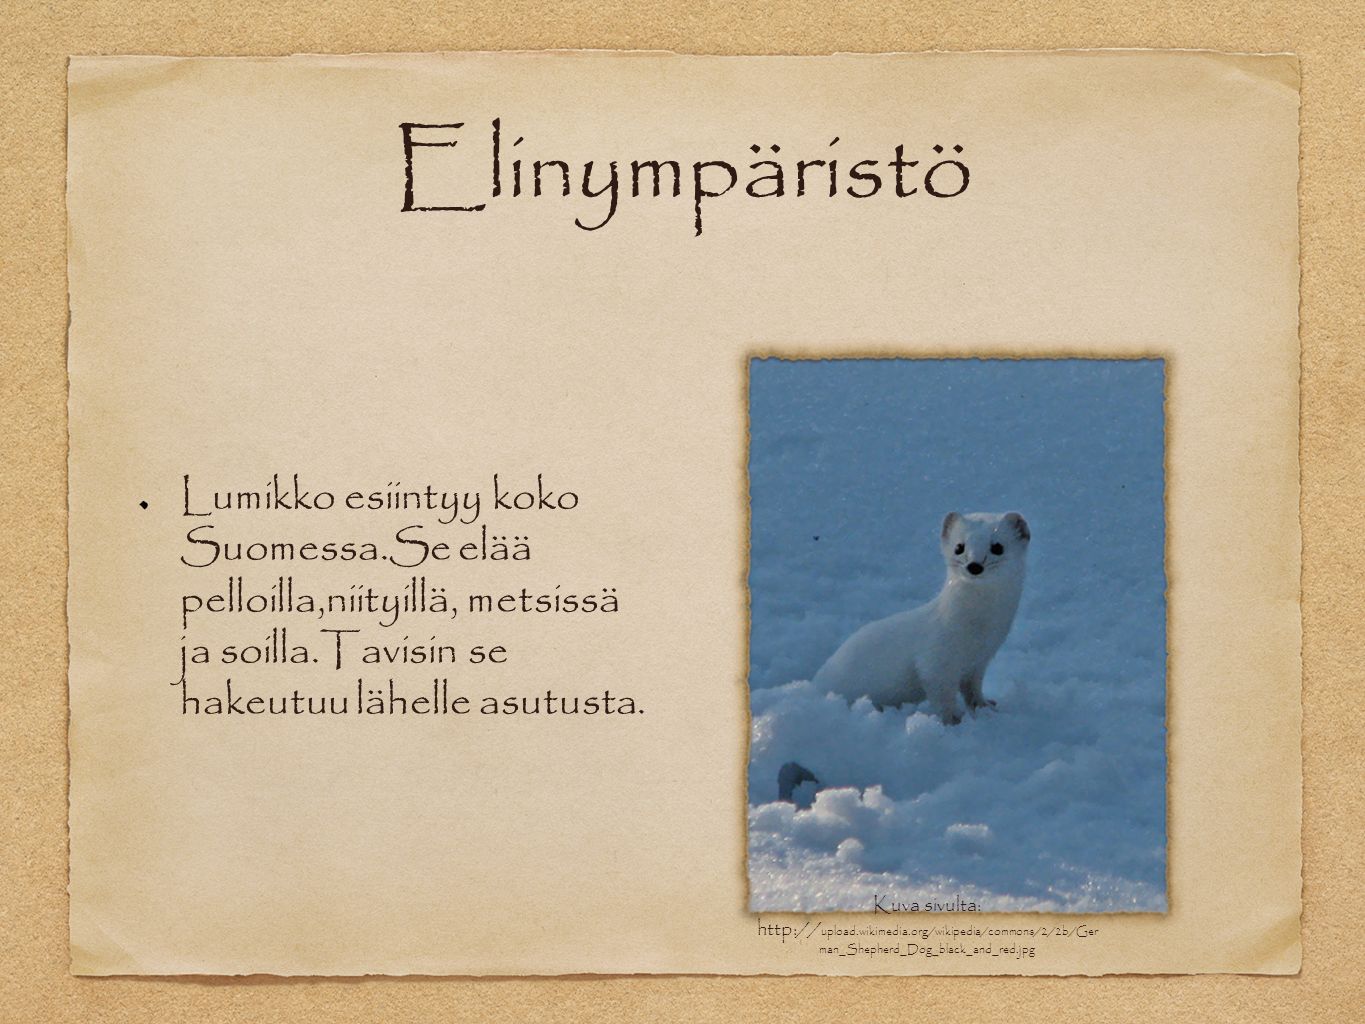 Elinympäristö Lumikko esiintyy koko Suomessa.Se elää pelloilla,niityillä, metsissä ja soilla.Tavisin se hakeutuu lähelle asutusta.